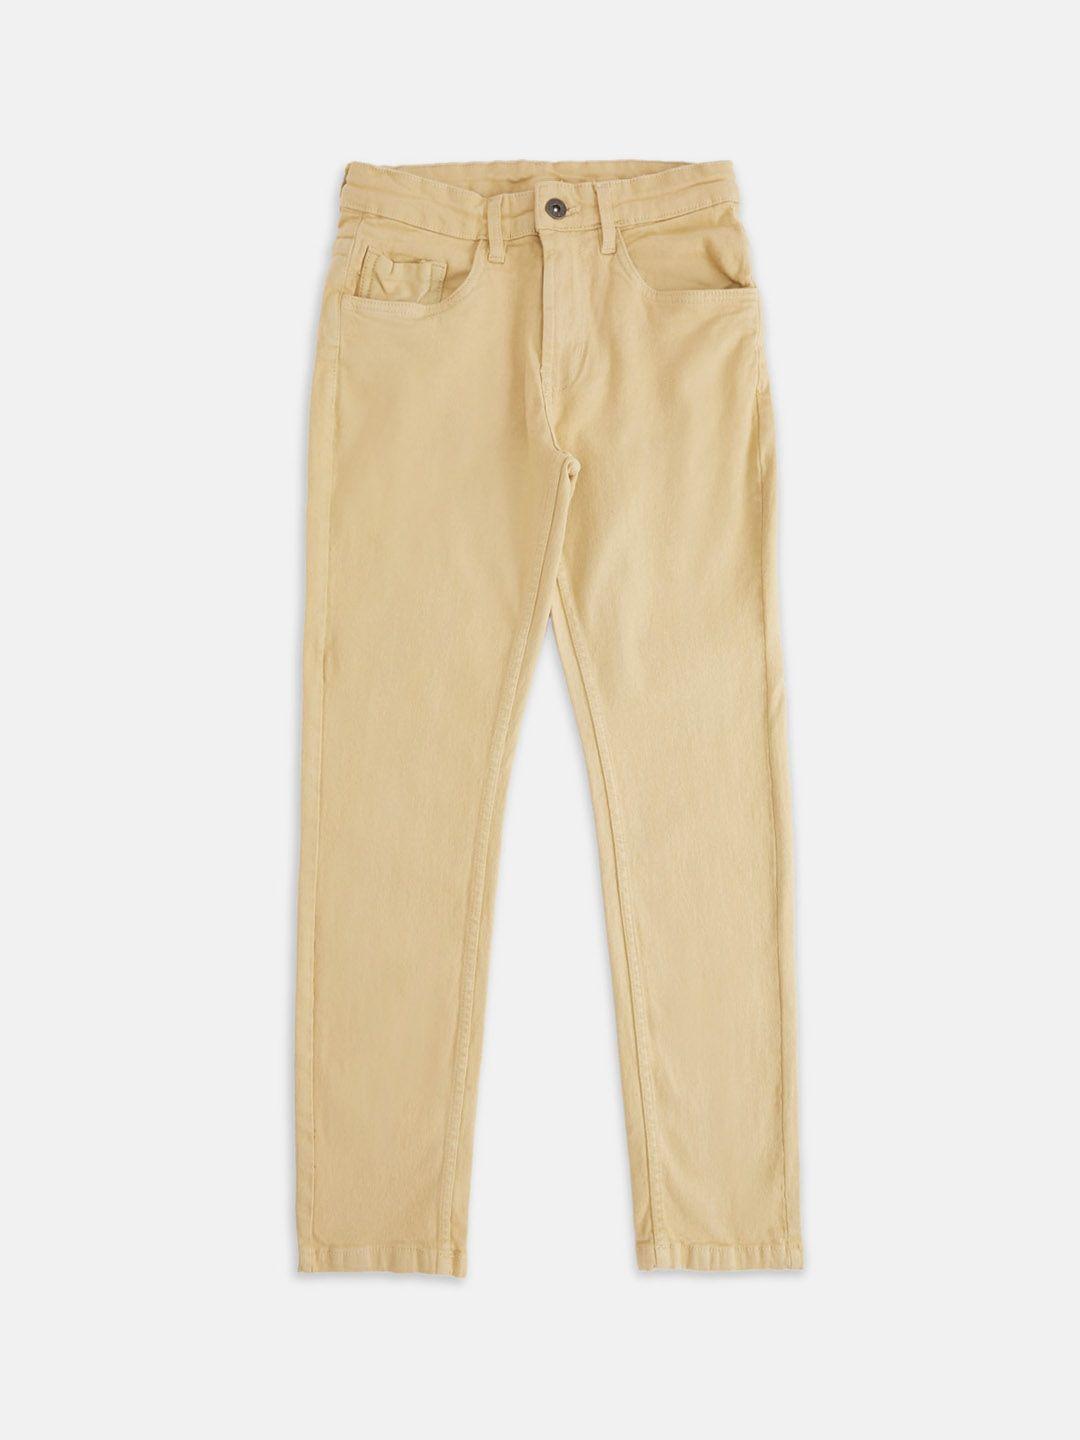 pantaloons junior boys khaki mid-rise tapered fit jeans